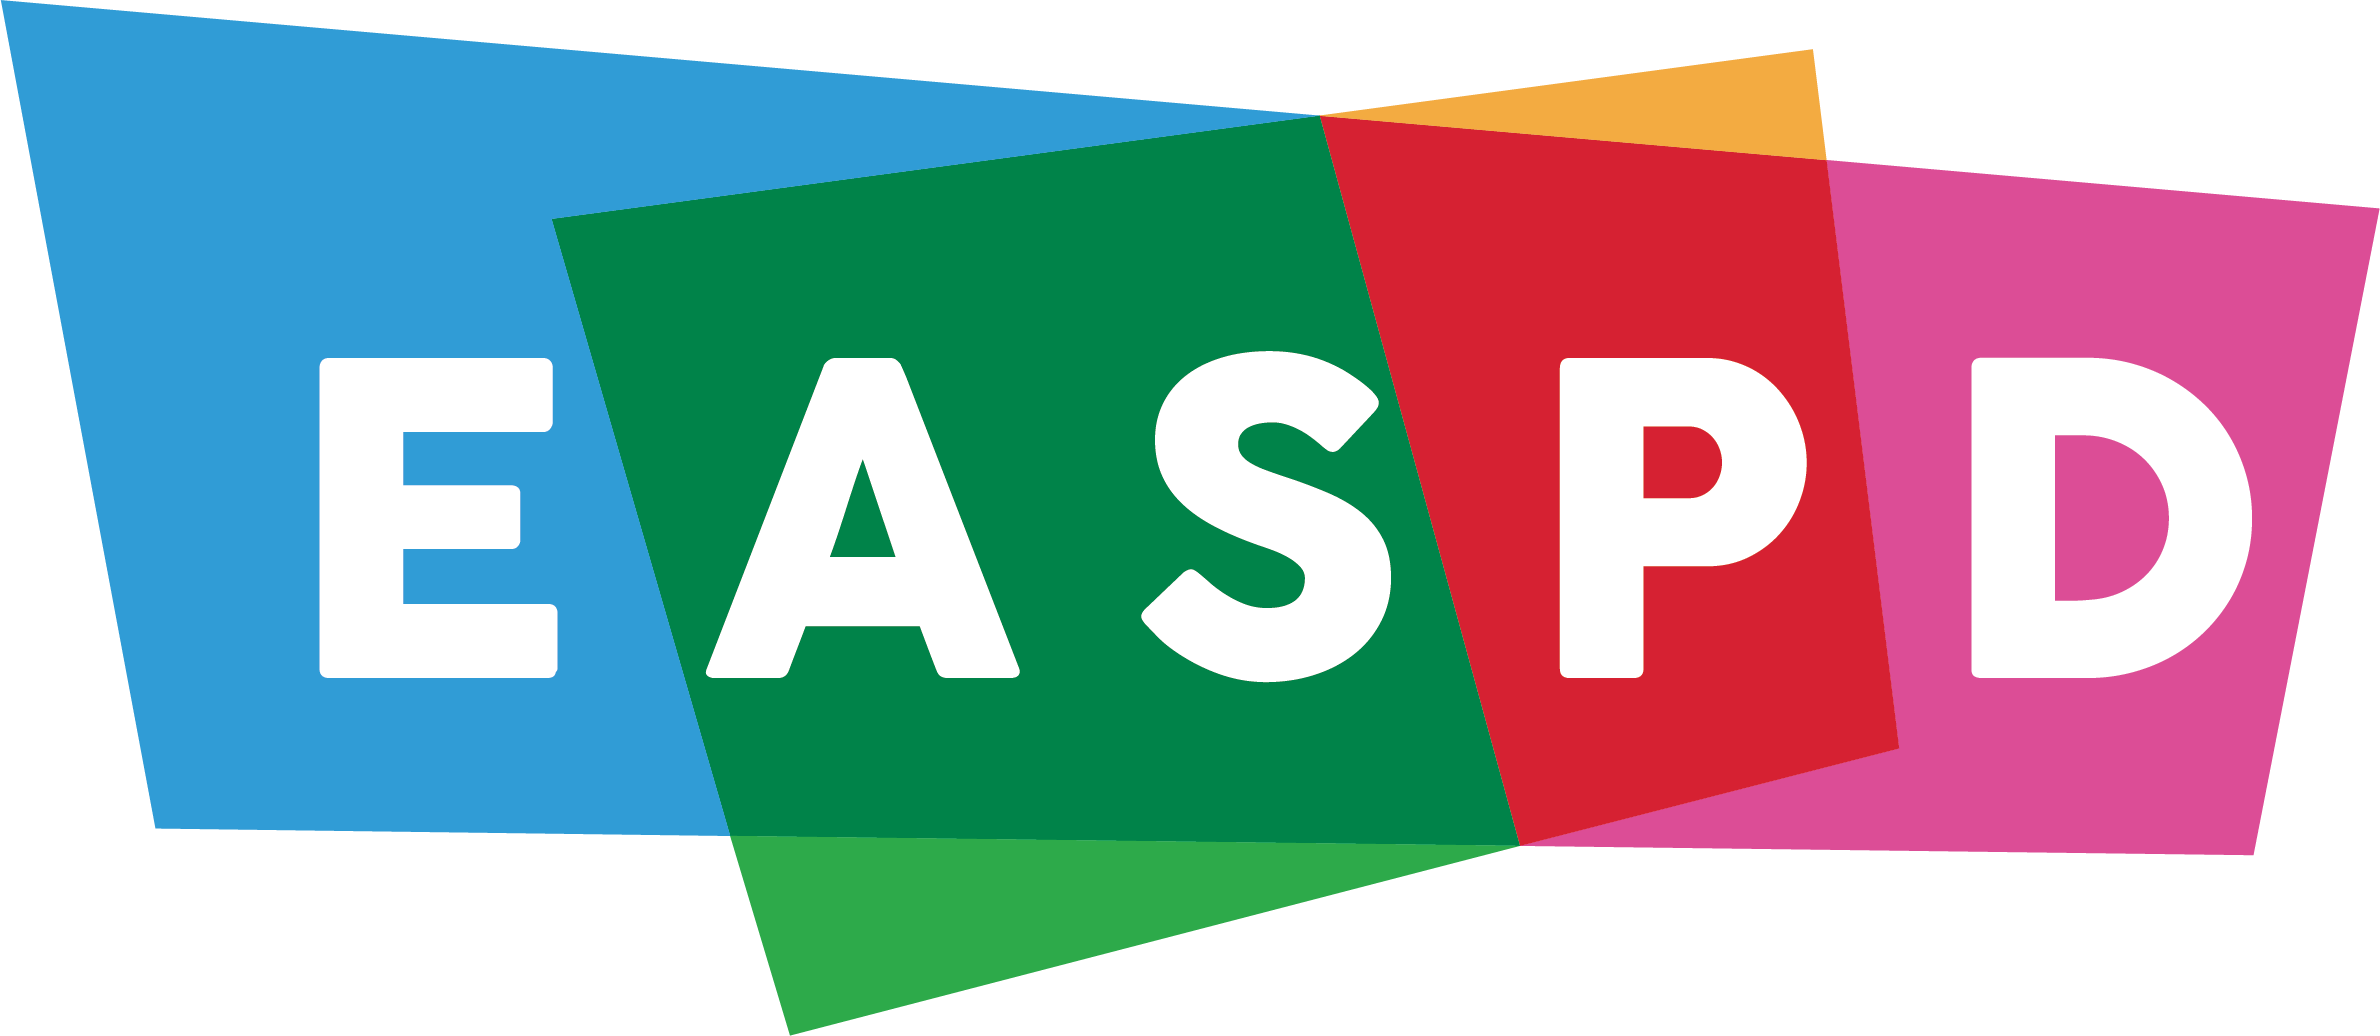 EASPD new logo 2021 